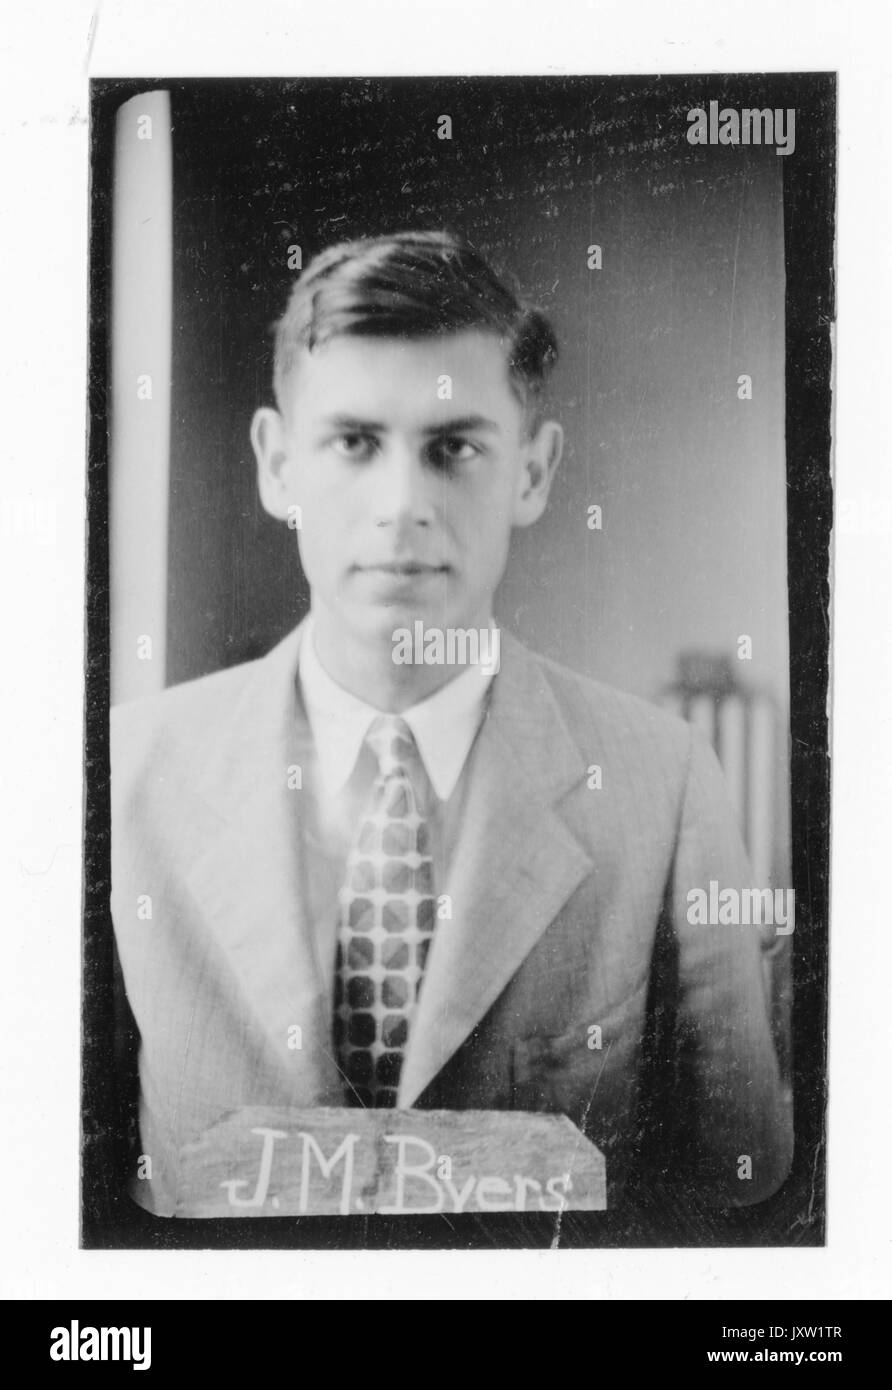 John Maxwell Byers, portrait Fotografie, Brustkorb, Gesicht, c 25 Jahre, 1924. Stockfoto